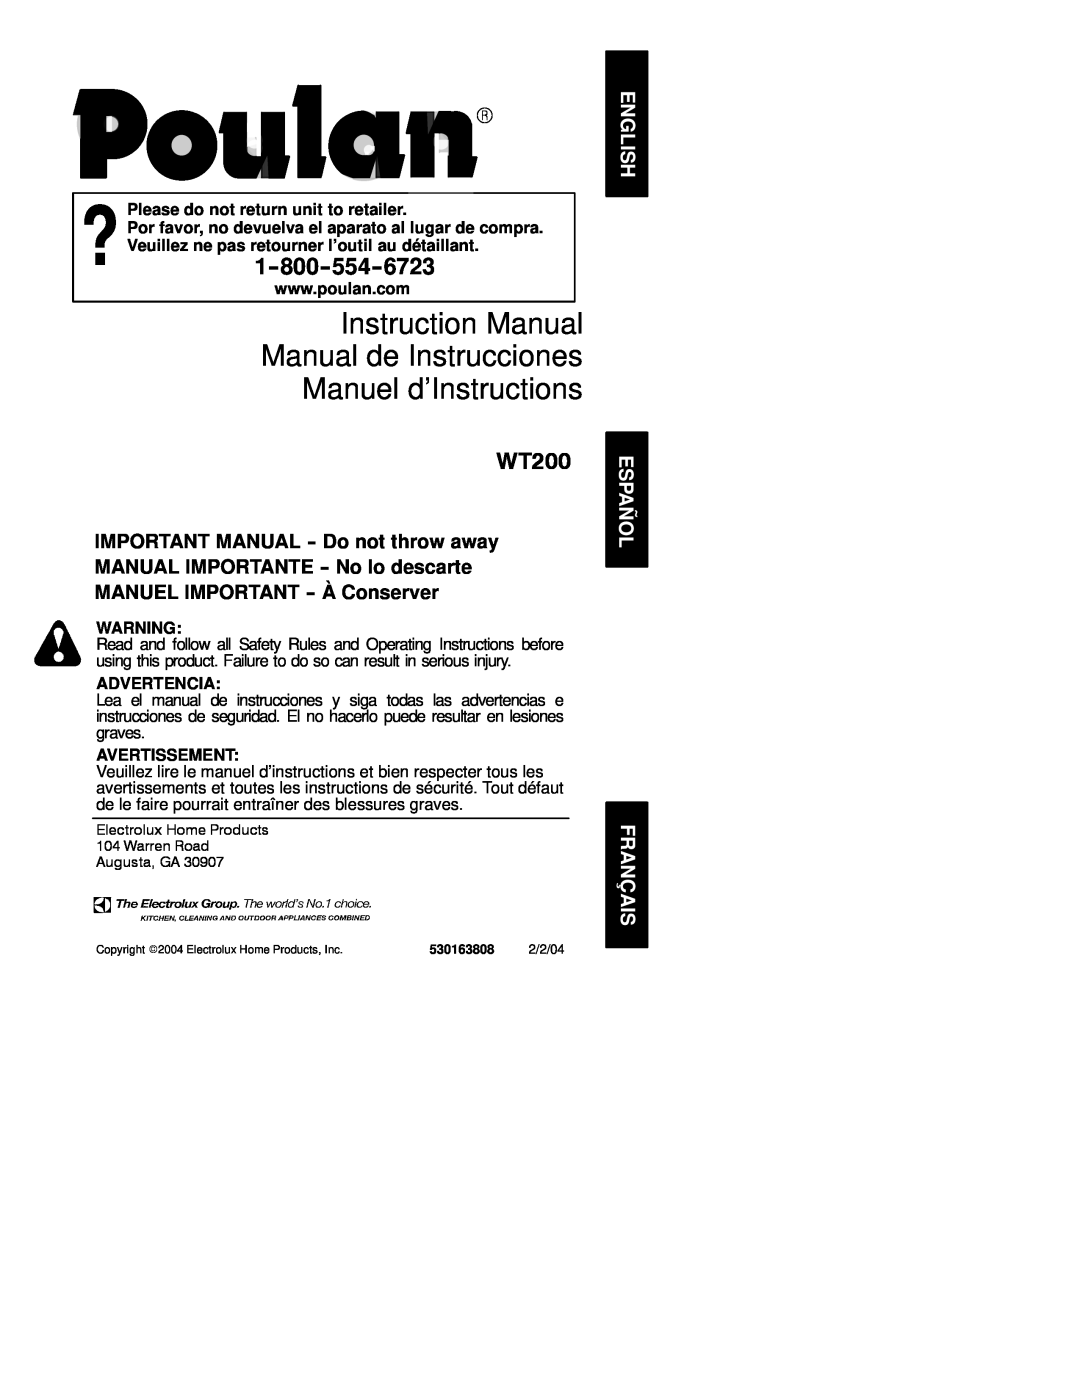 Poulan 530163808 instruction manual Manuel d’Instructions, WT200, Please do not return unit to retailer, Advertencia 